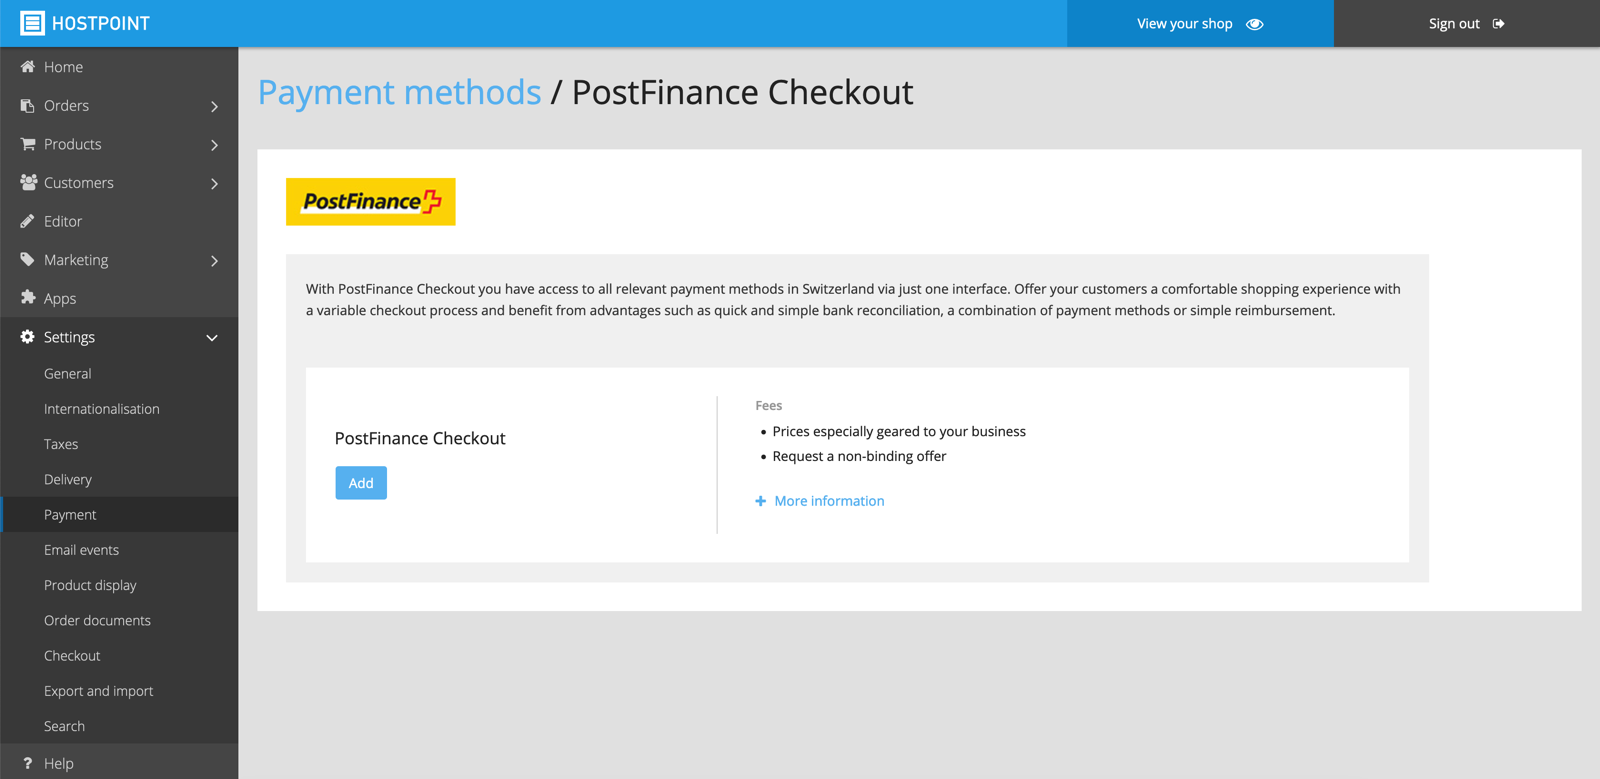 postfinance checkout 01 en